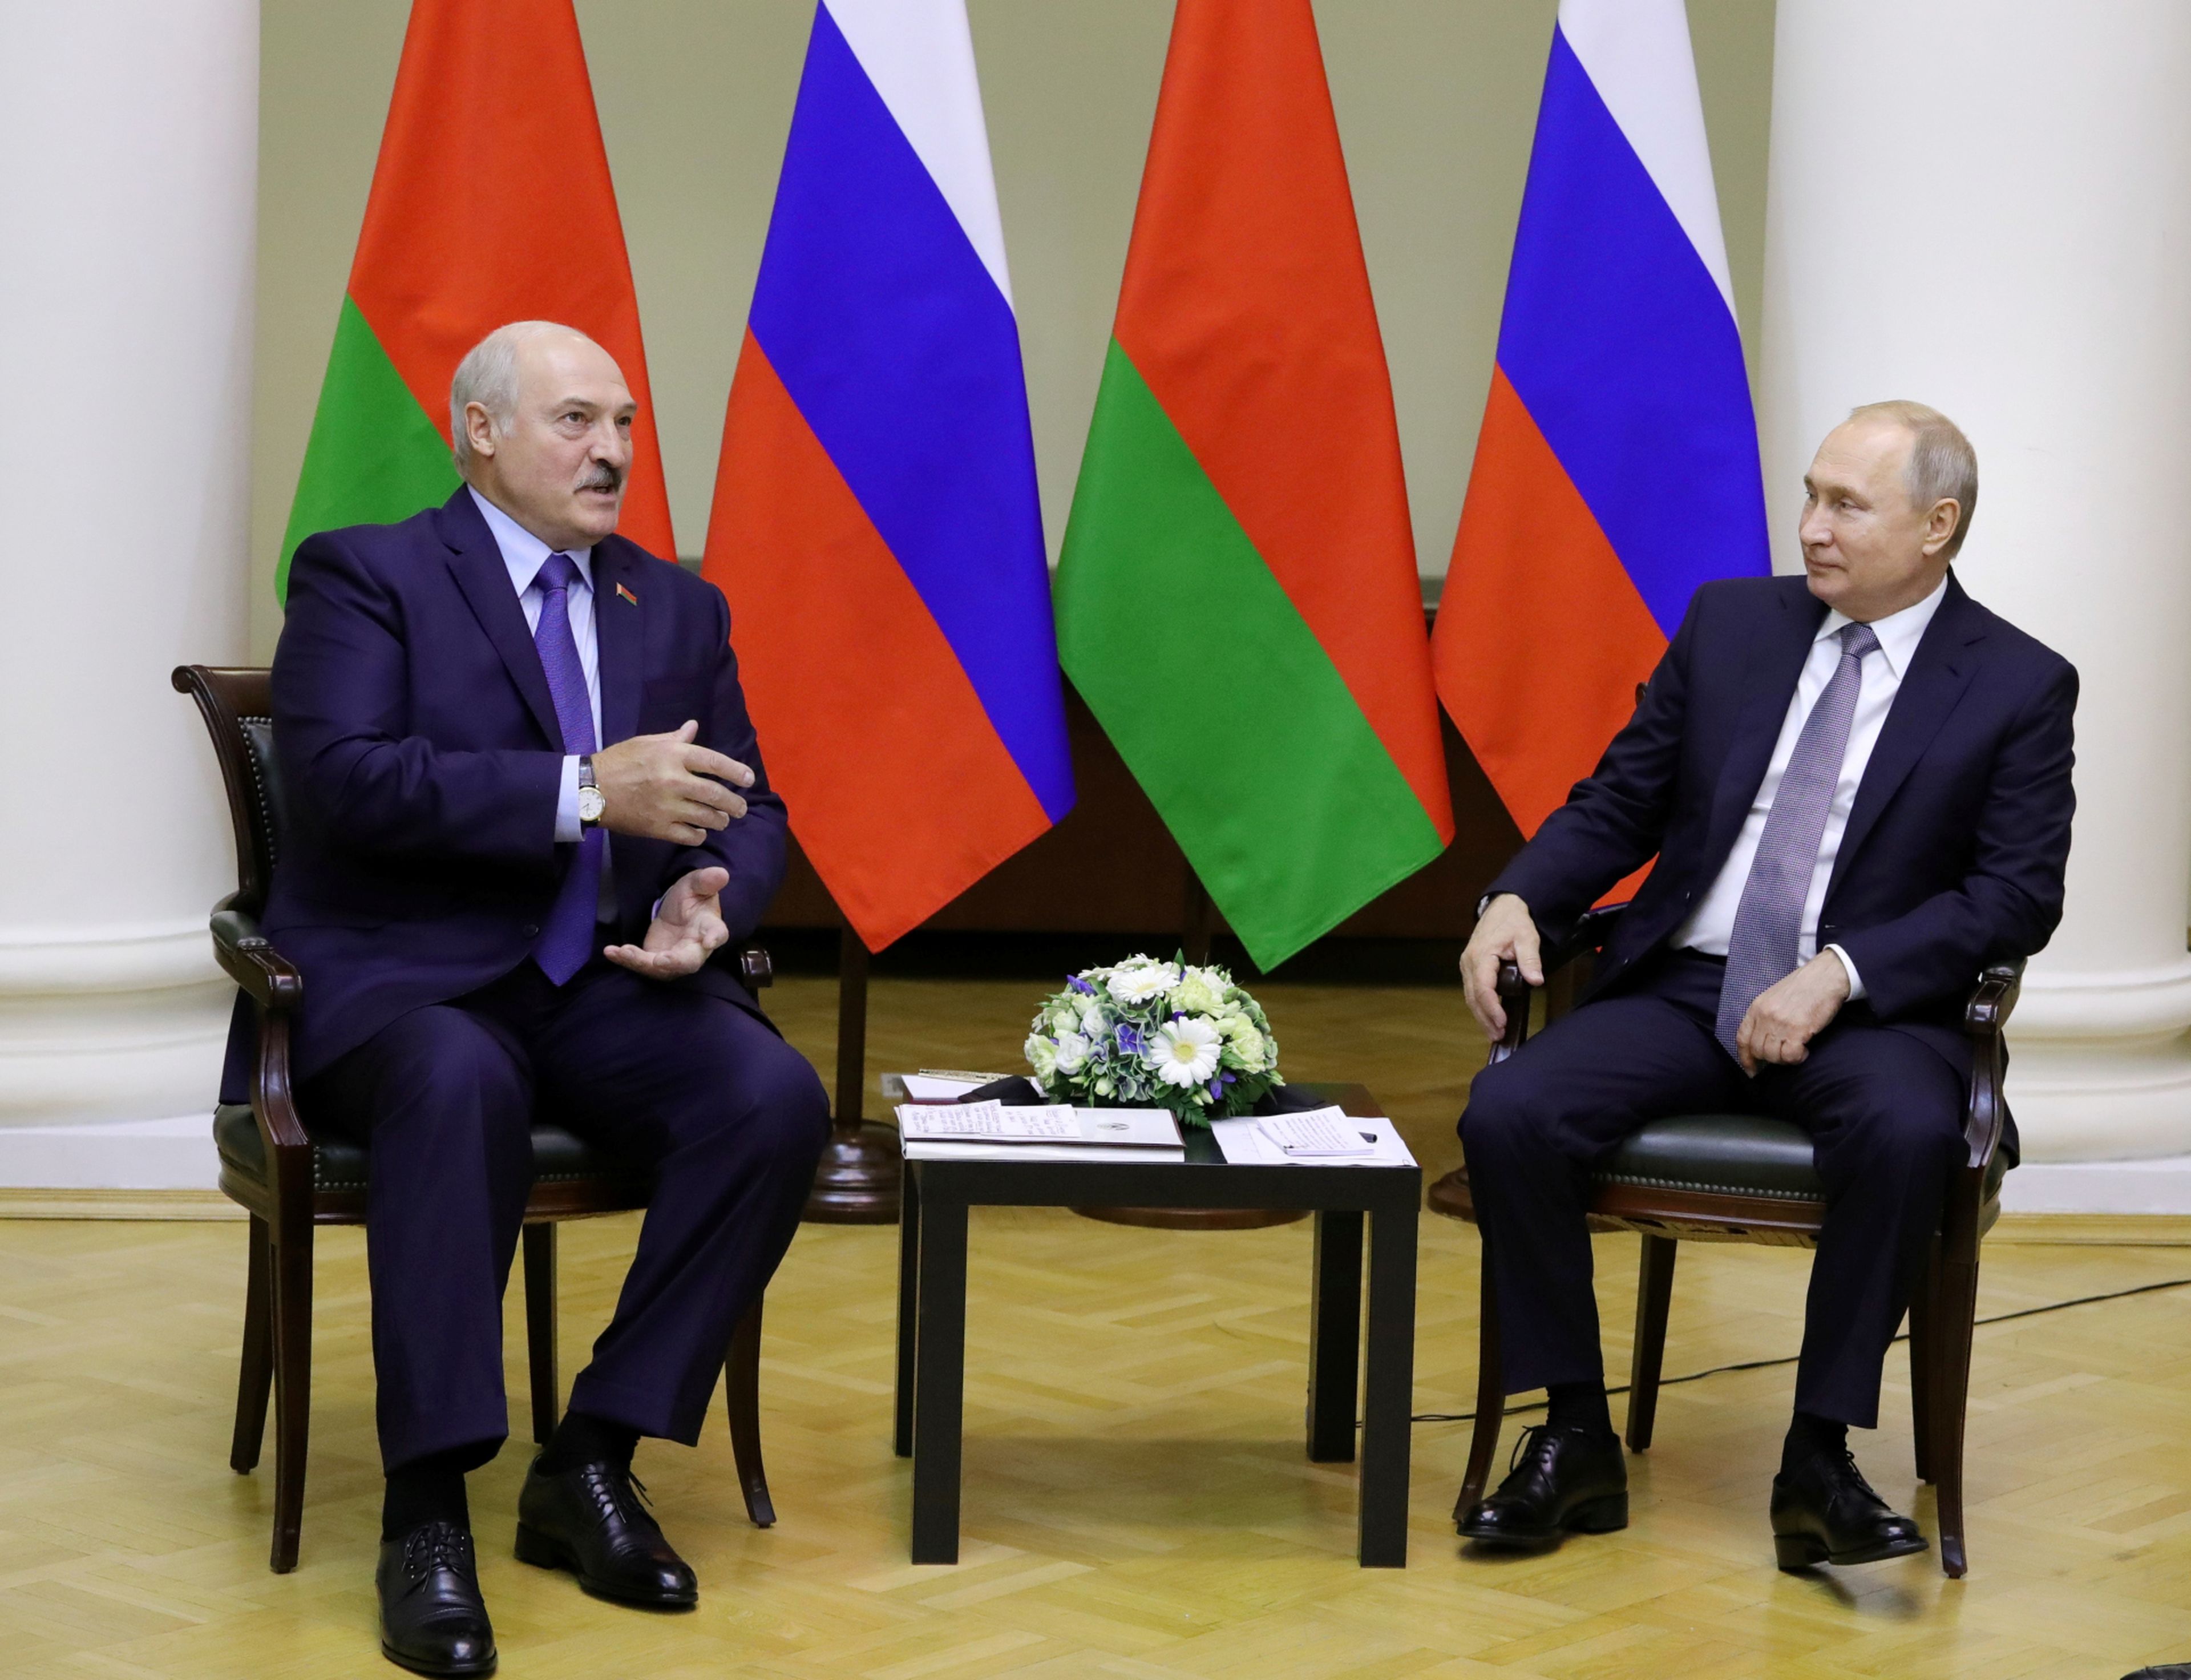 presidente bielorruso aleksandr lukashenko homologo ruso vladimir putin - Españoles a la fuga: estos son los países que no tienen acuerdos de extradición con España